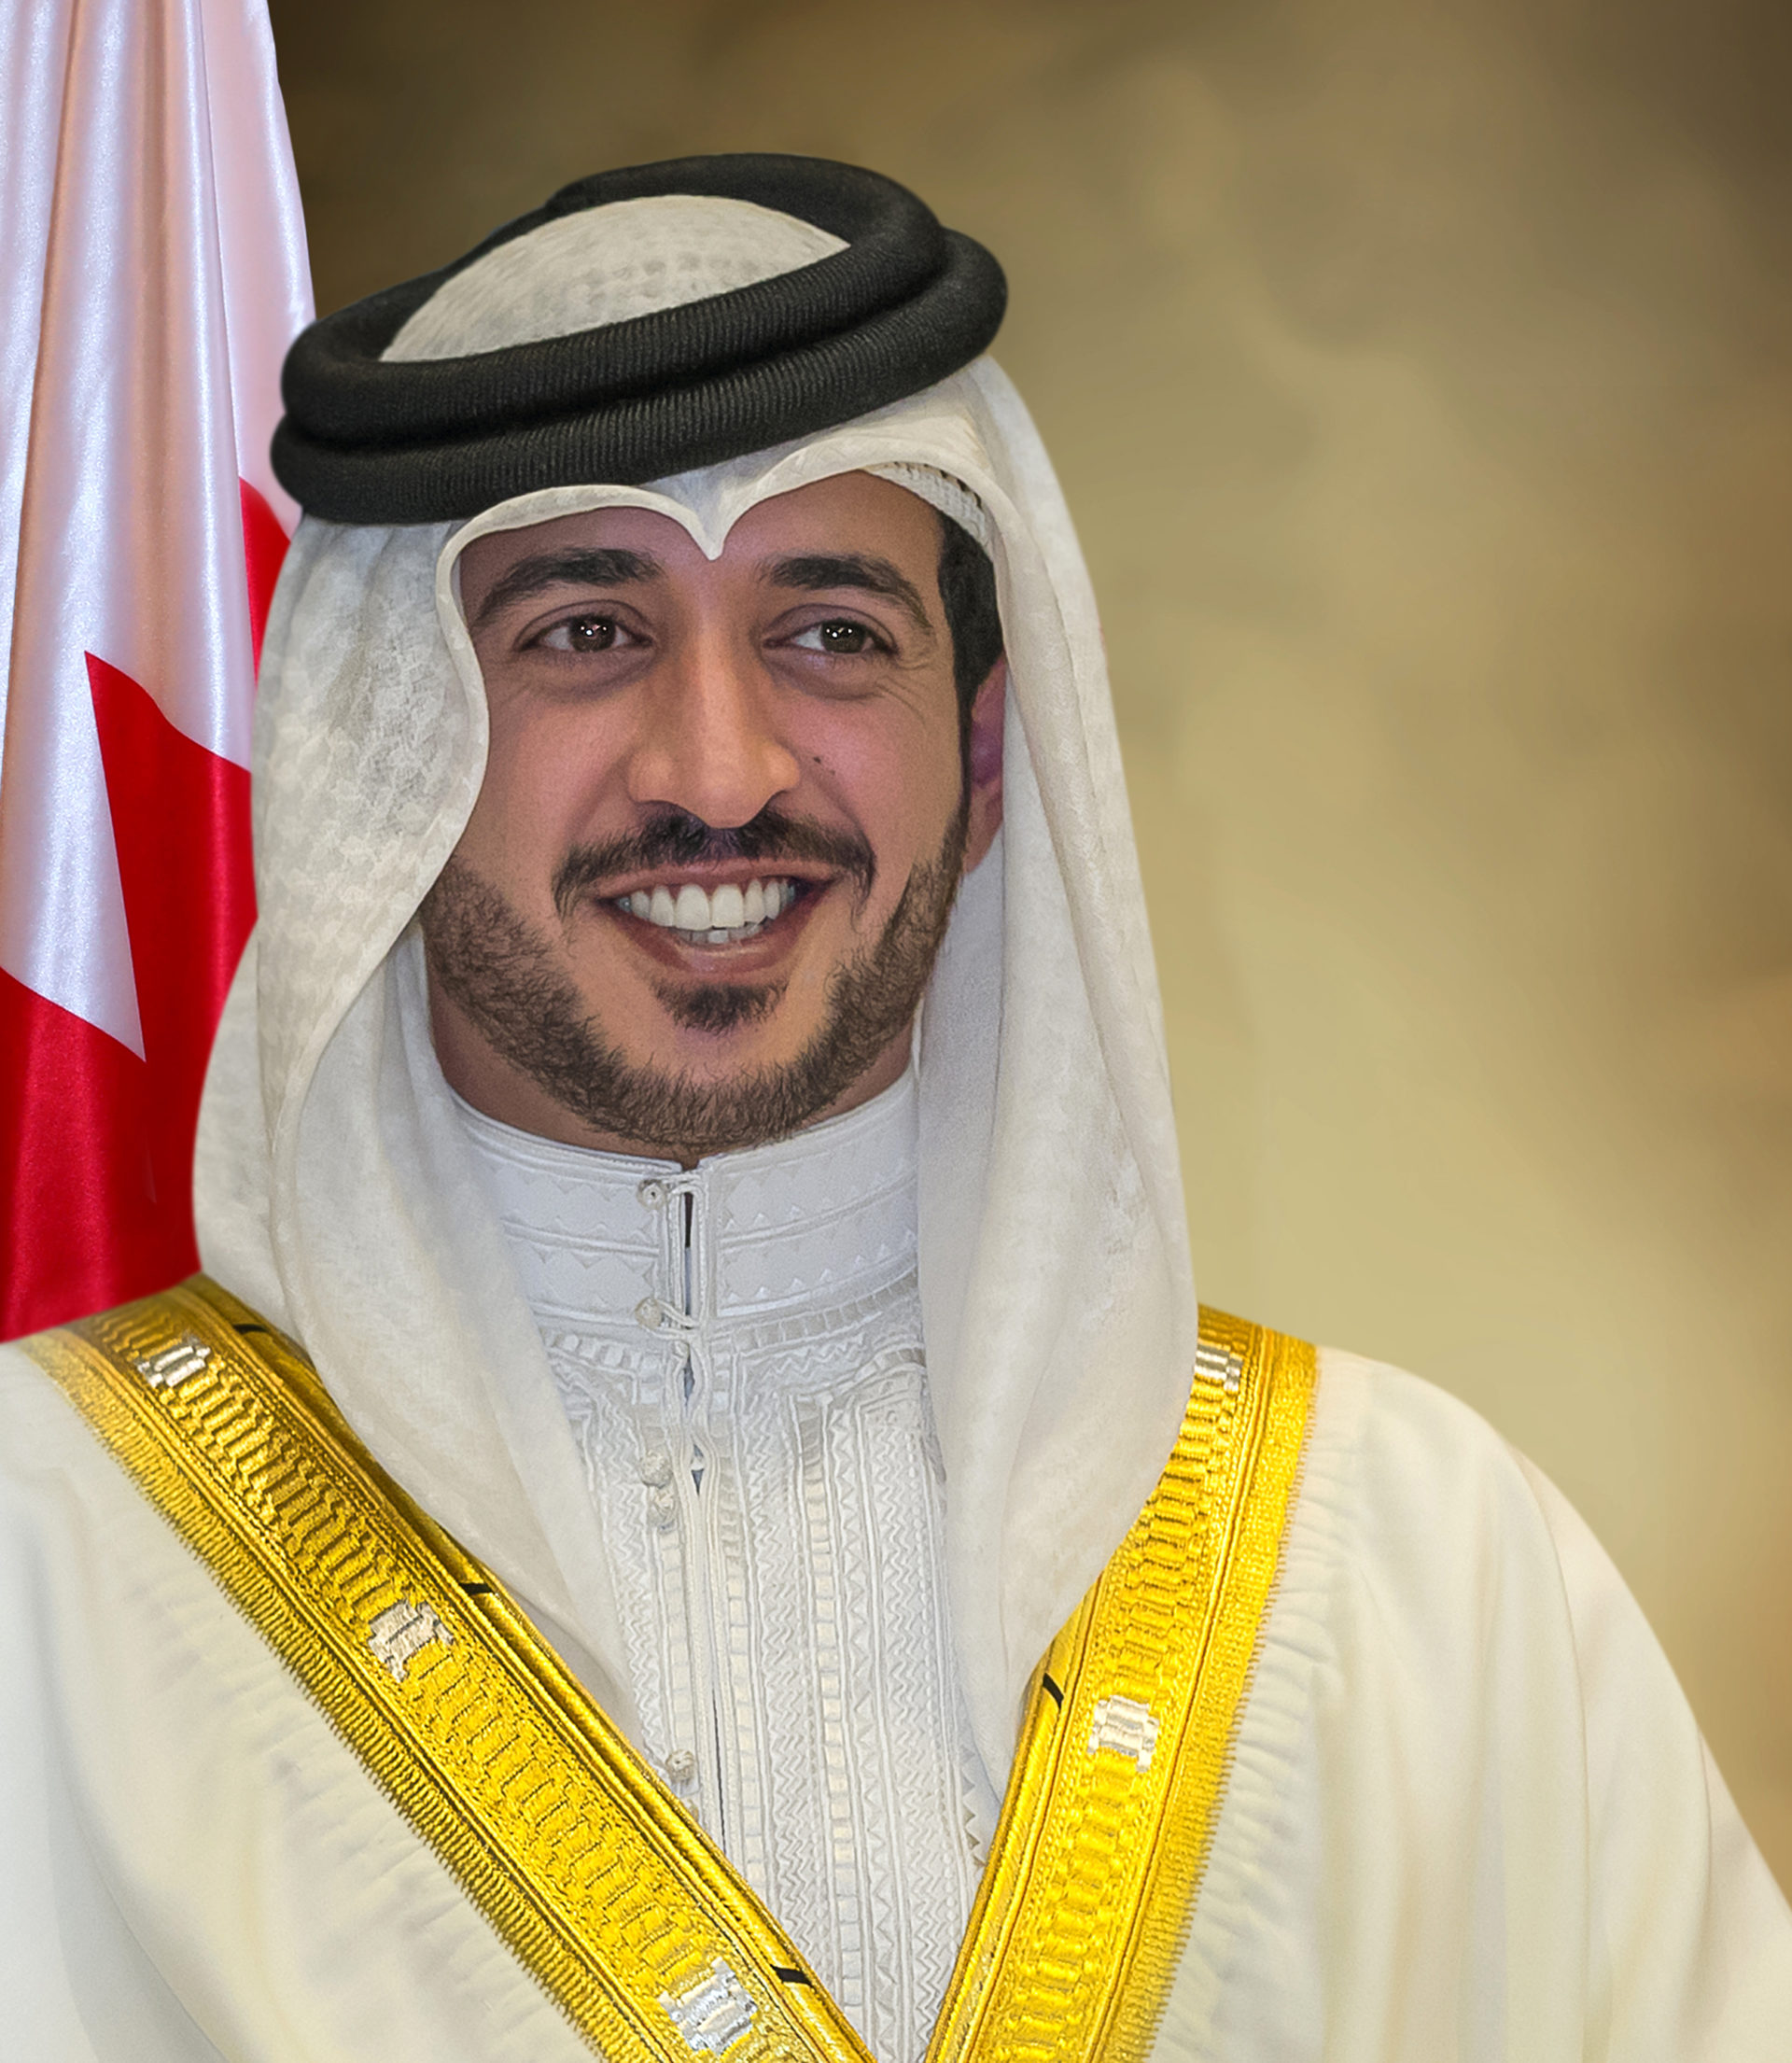 HH Sheikh Khalid bin Hamad Al Khalifa, Pioneer of Artificial Intelligence in the region